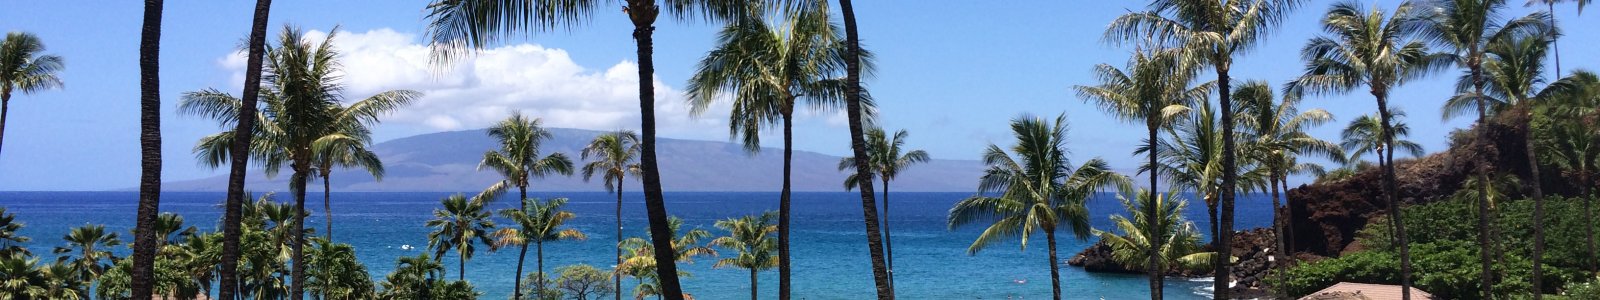 Kaanapali Vacation Rentals & Villas | Maui's Finest